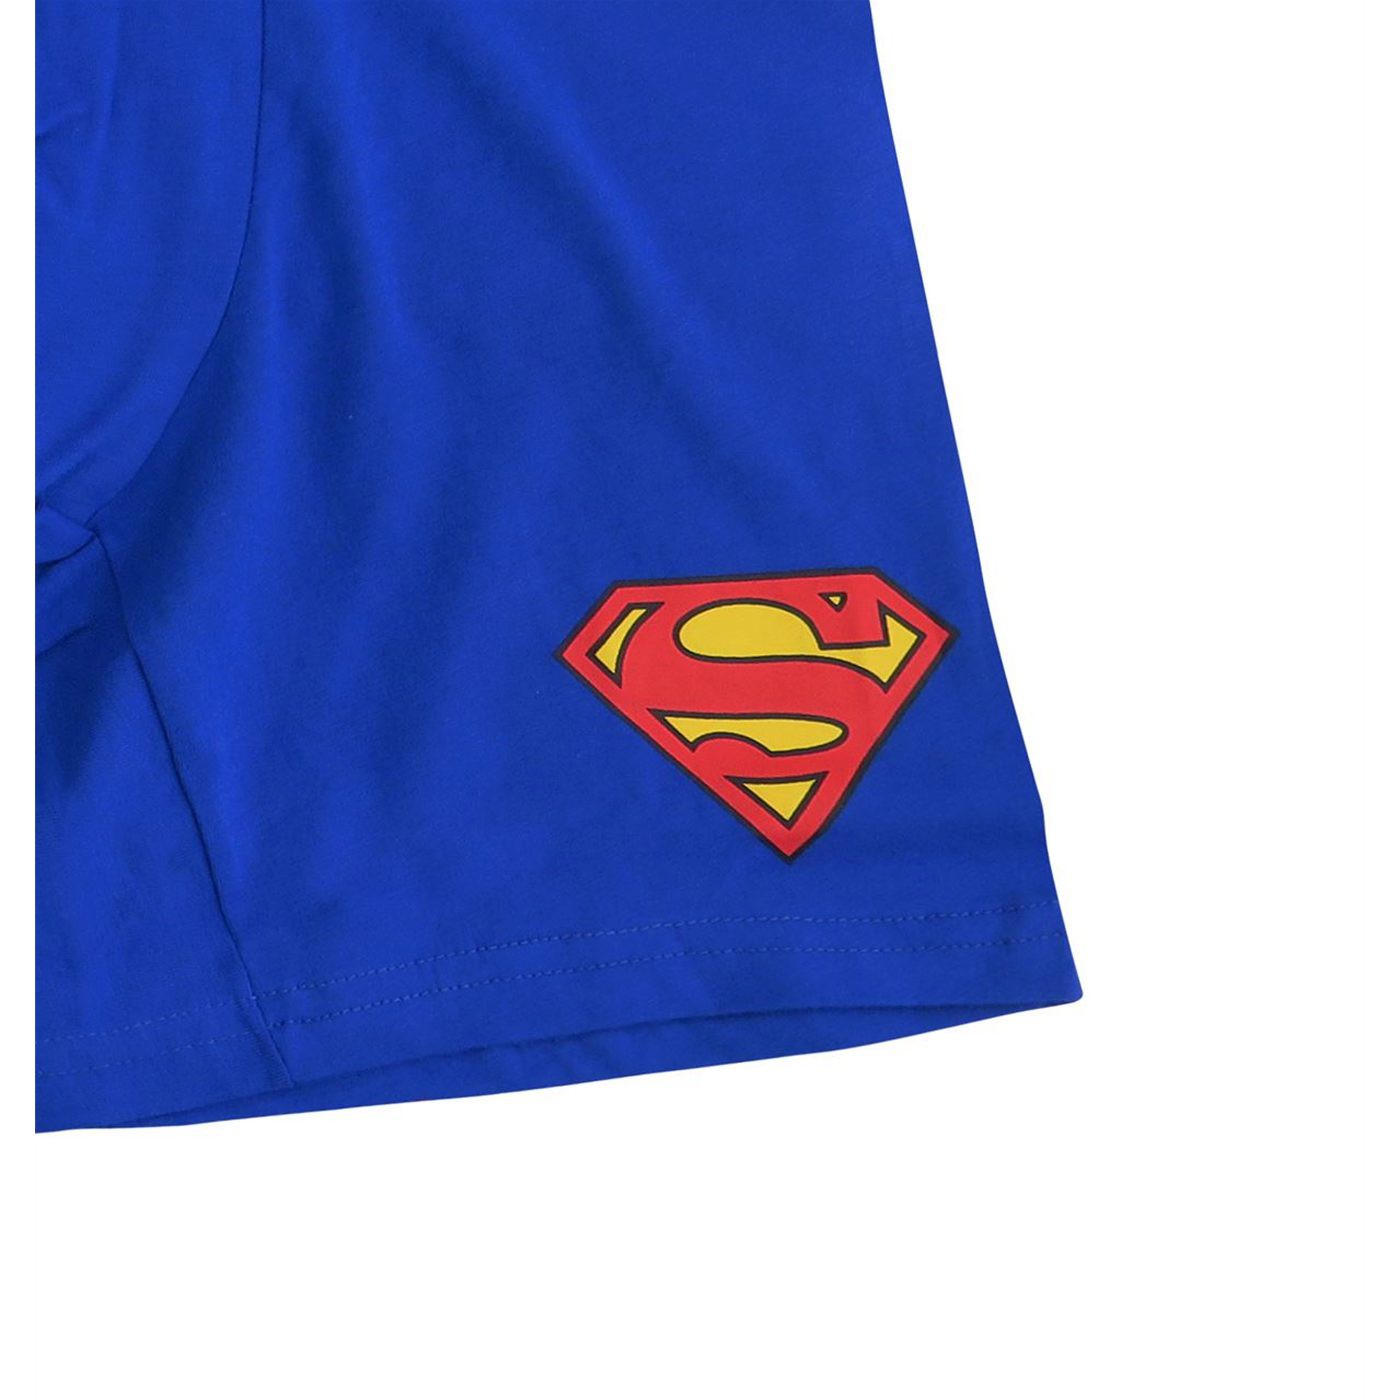 Superman Symbol Men's Underwear Fashion Boxer Briefs